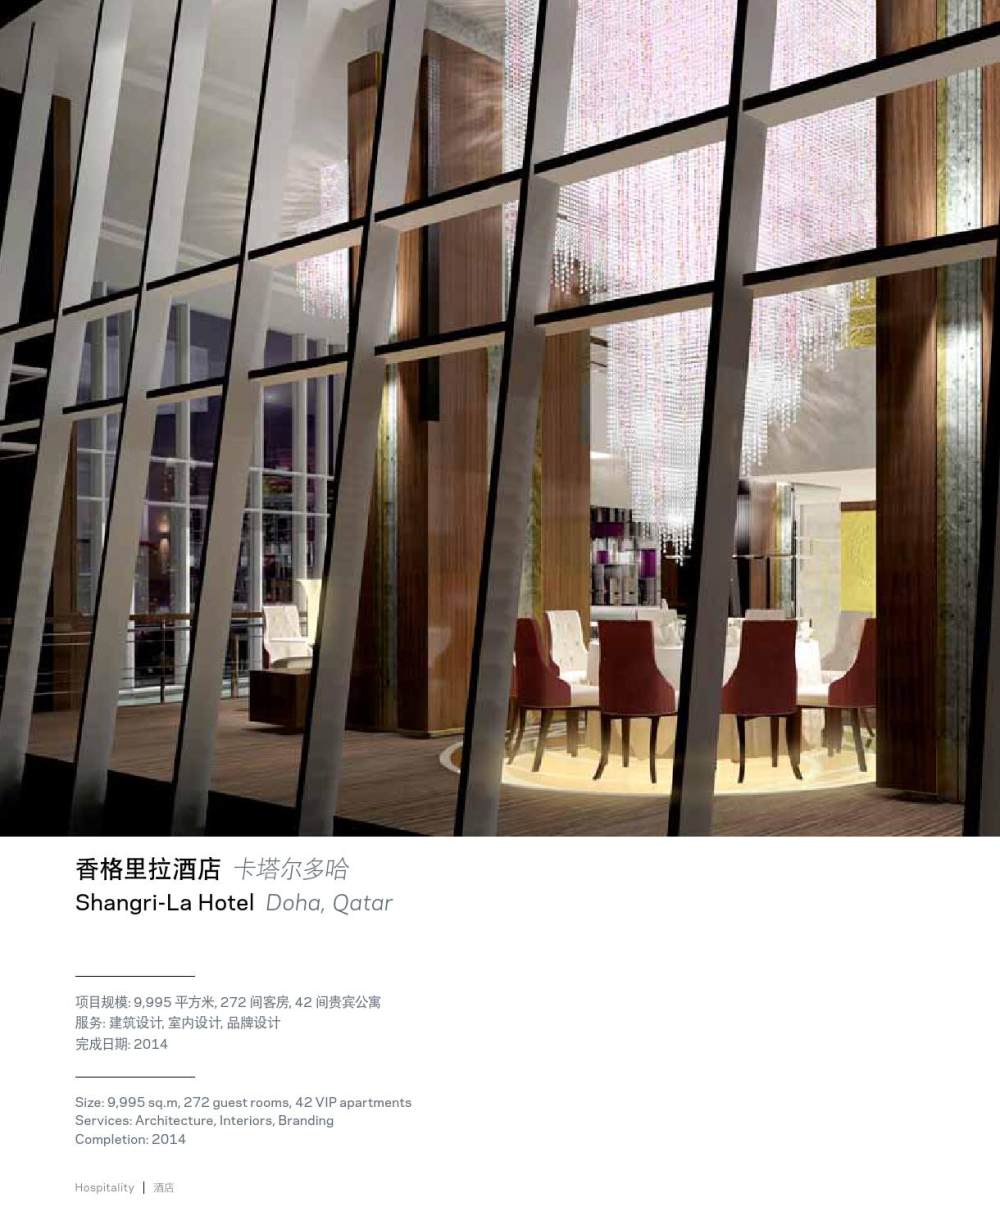 HOK AP 酒店室內設計 Hospitality Interious by HOK Marketing_page_34.jpg